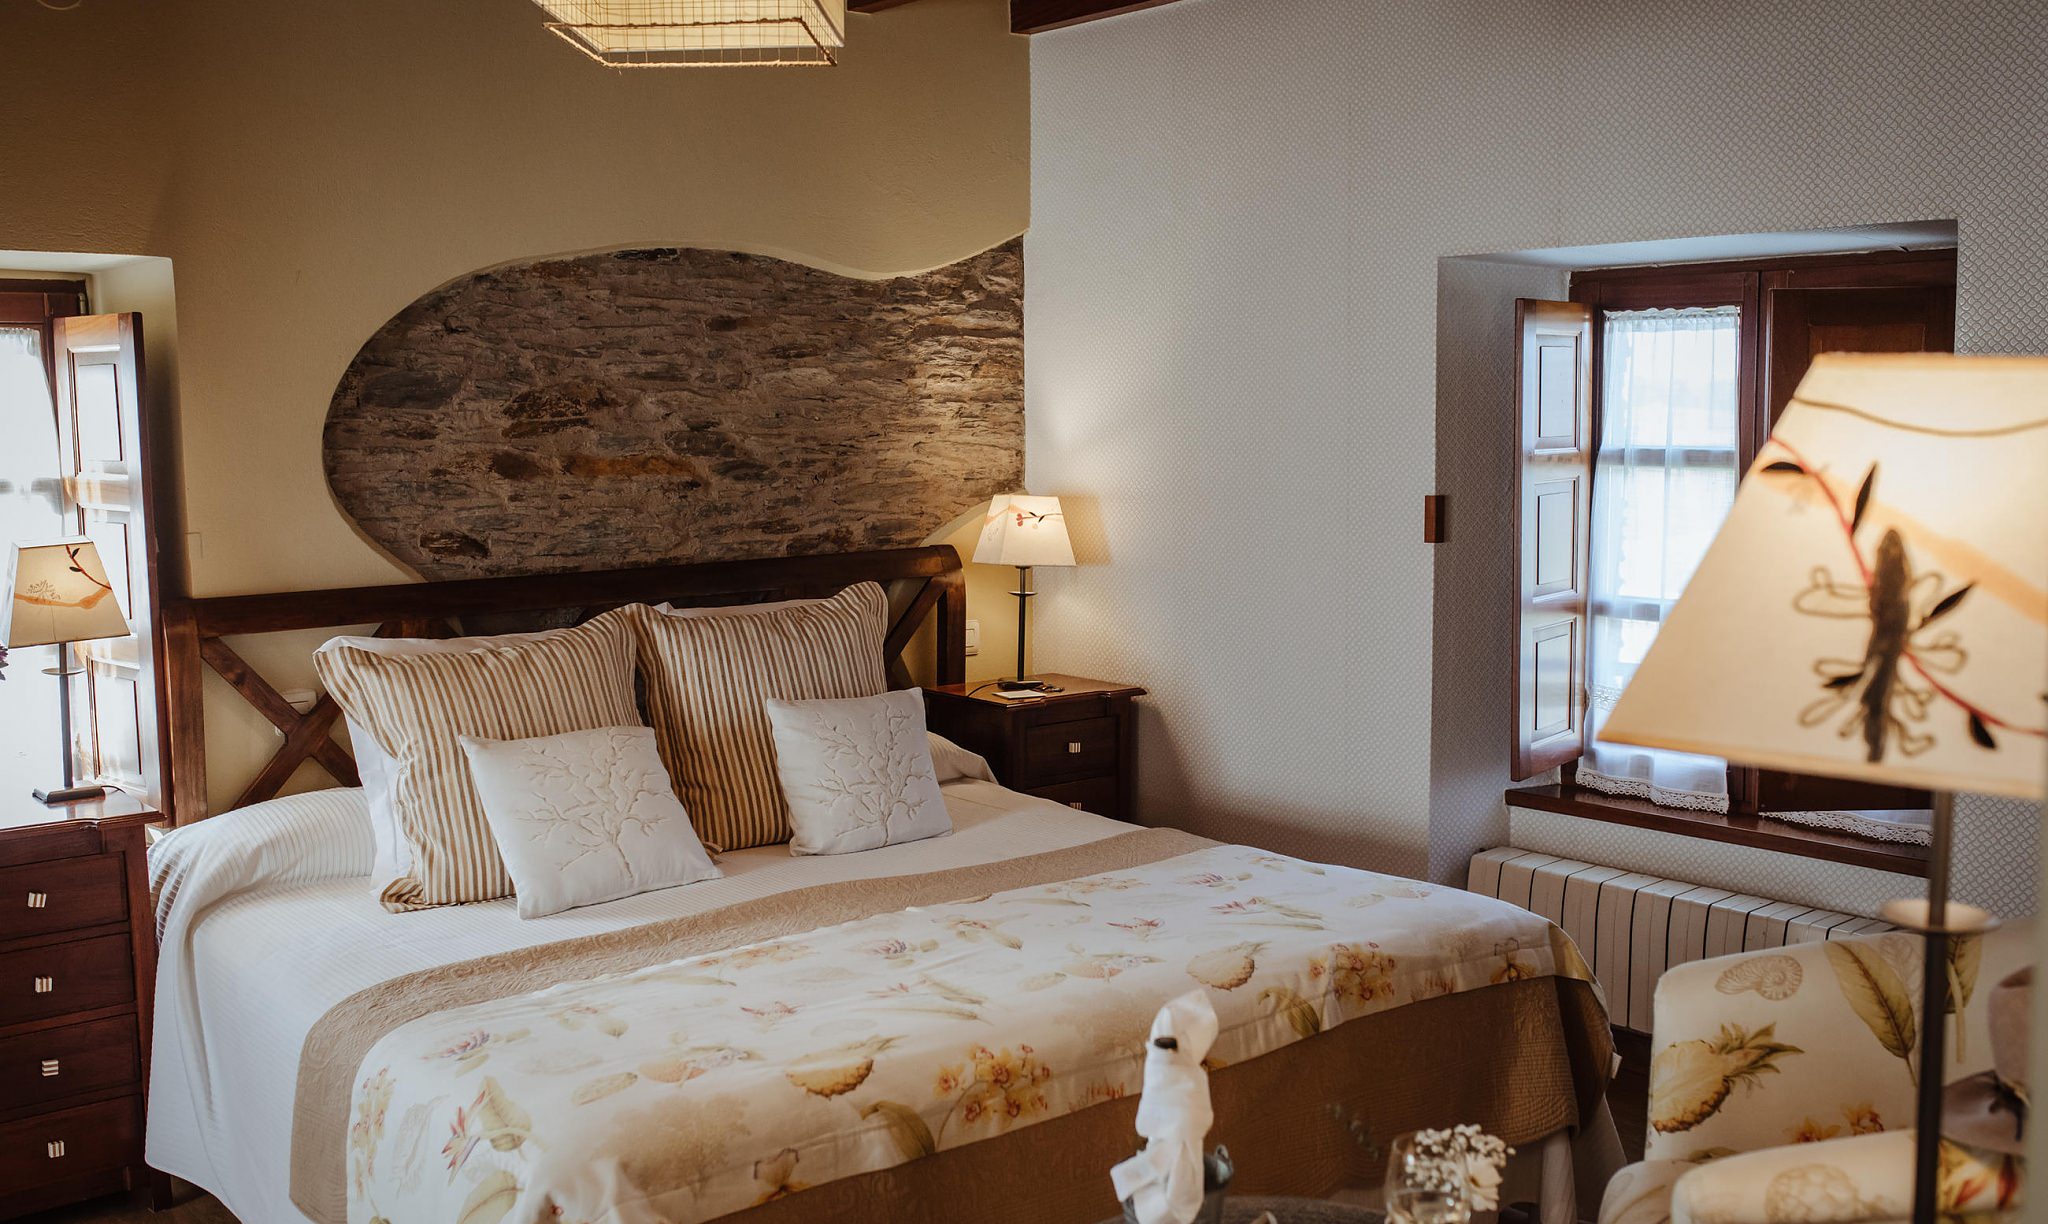 Habitación con Encanto hotel rural Asturias